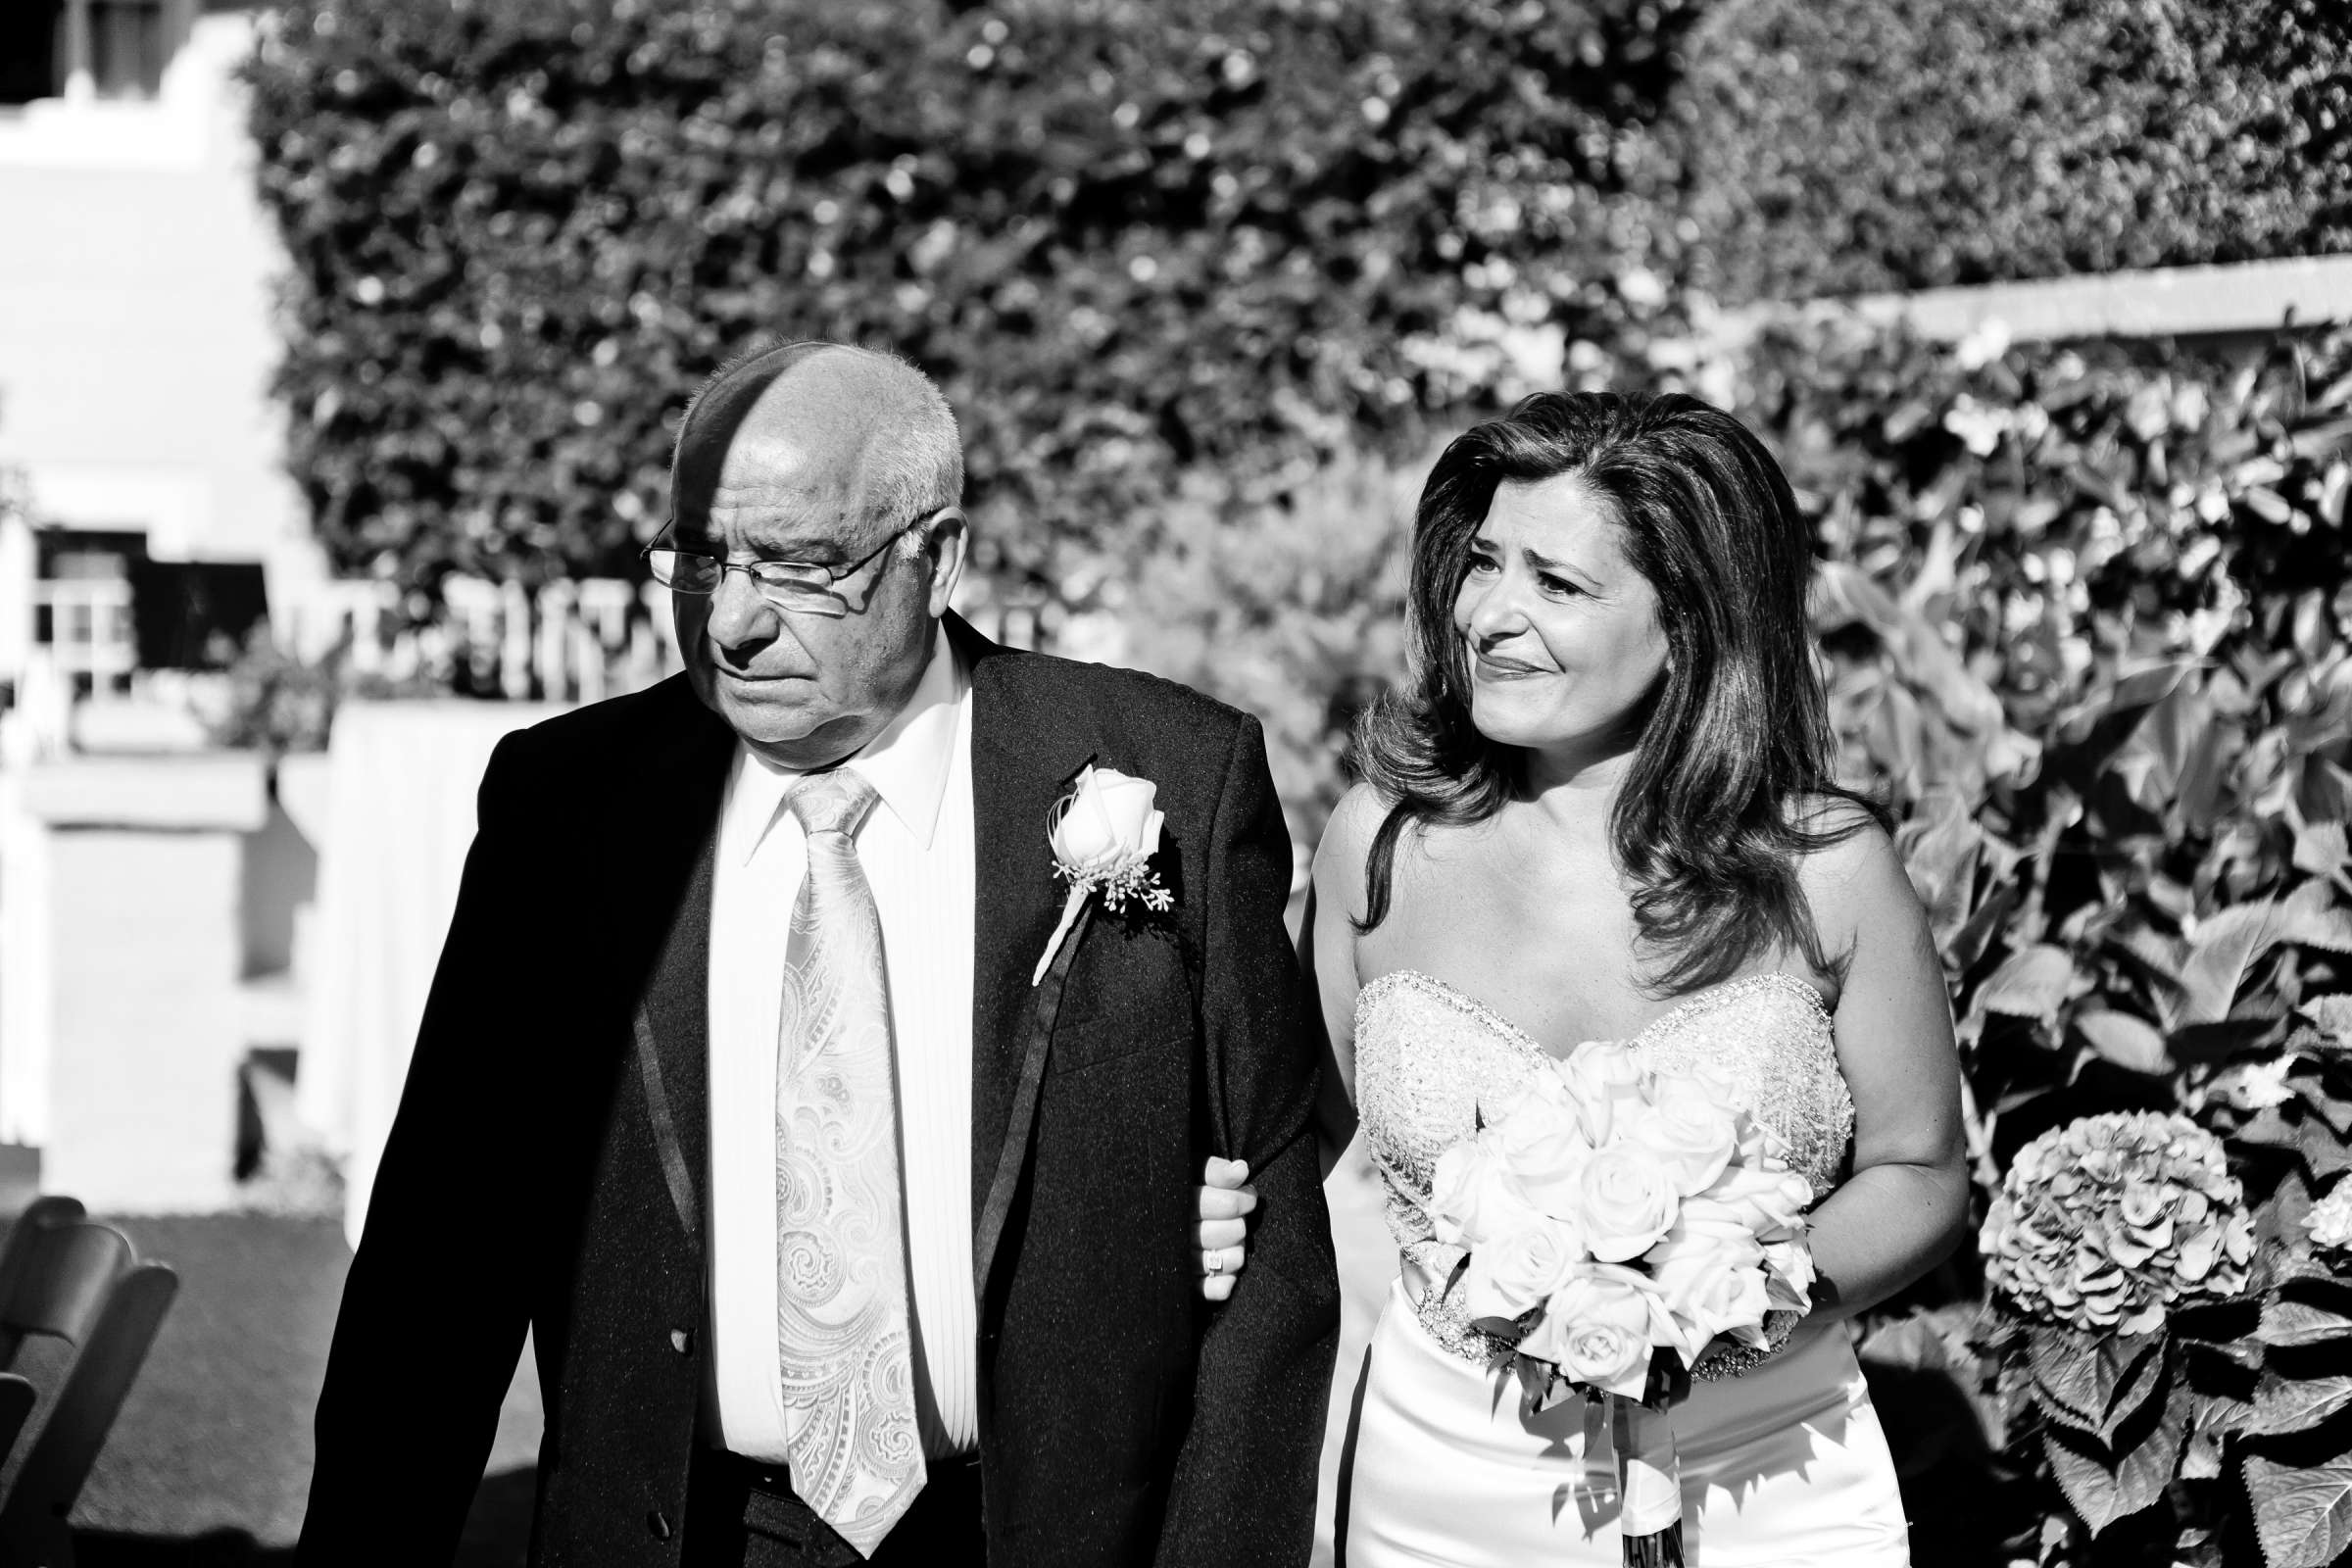 La Valencia Wedding, Paula and Gary Wedding Photo #306938 by True Photography